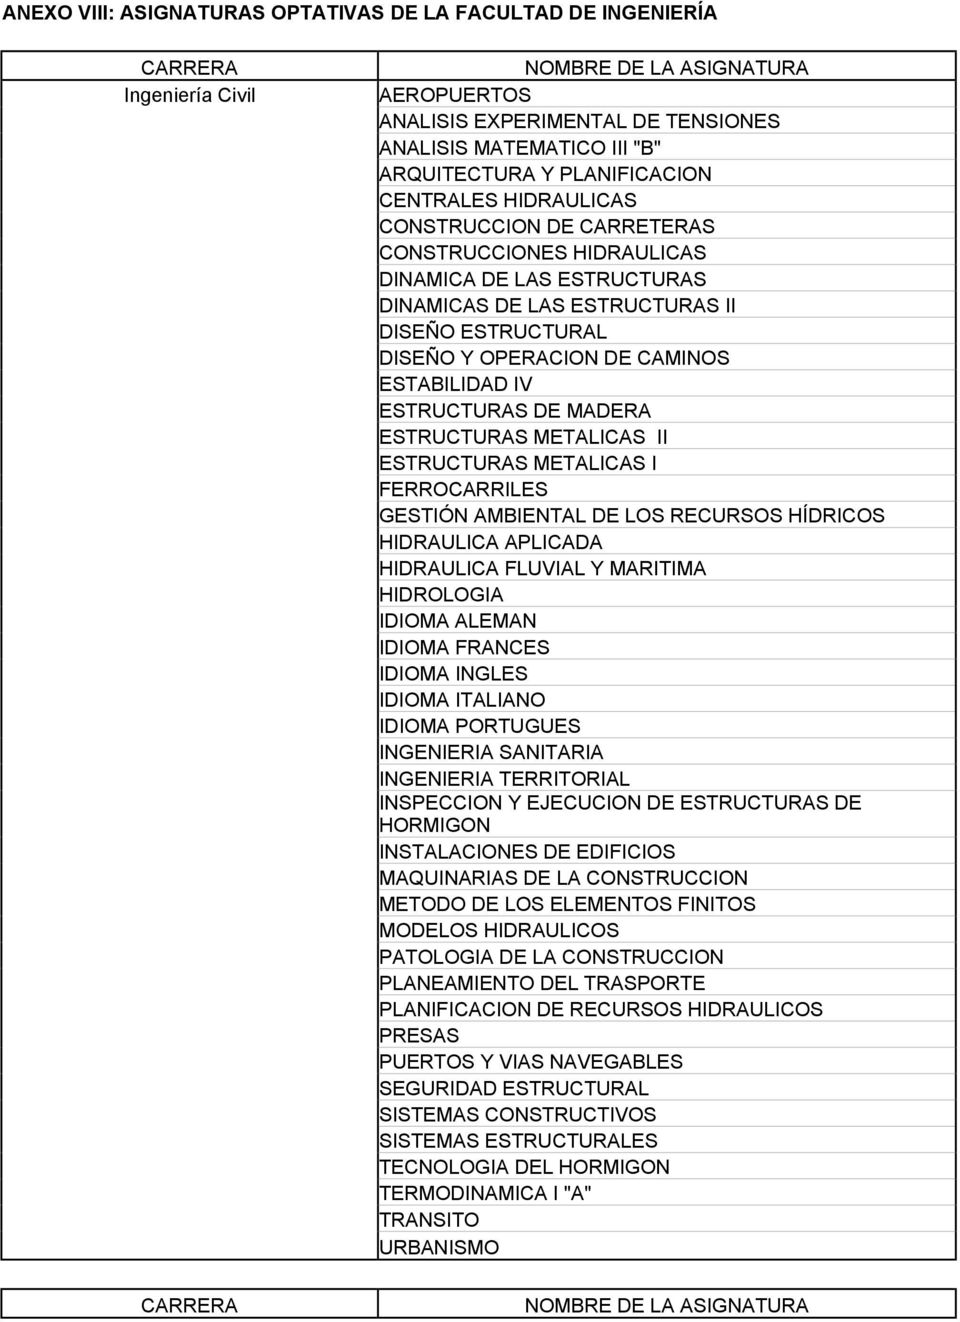 ESTRUCTURAS DE MADERA ESTRUCTURAS METALICAS II ESTRUCTURAS METALICAS I FERROCARRILES GESTIÓN AMBIENTAL DE LOS RECURSOS HÍDRICOS HIDRAULICA APLICADA HIDRAULICA FLUVIAL Y MARITIMA HIDROLOGIA INGENIERIA